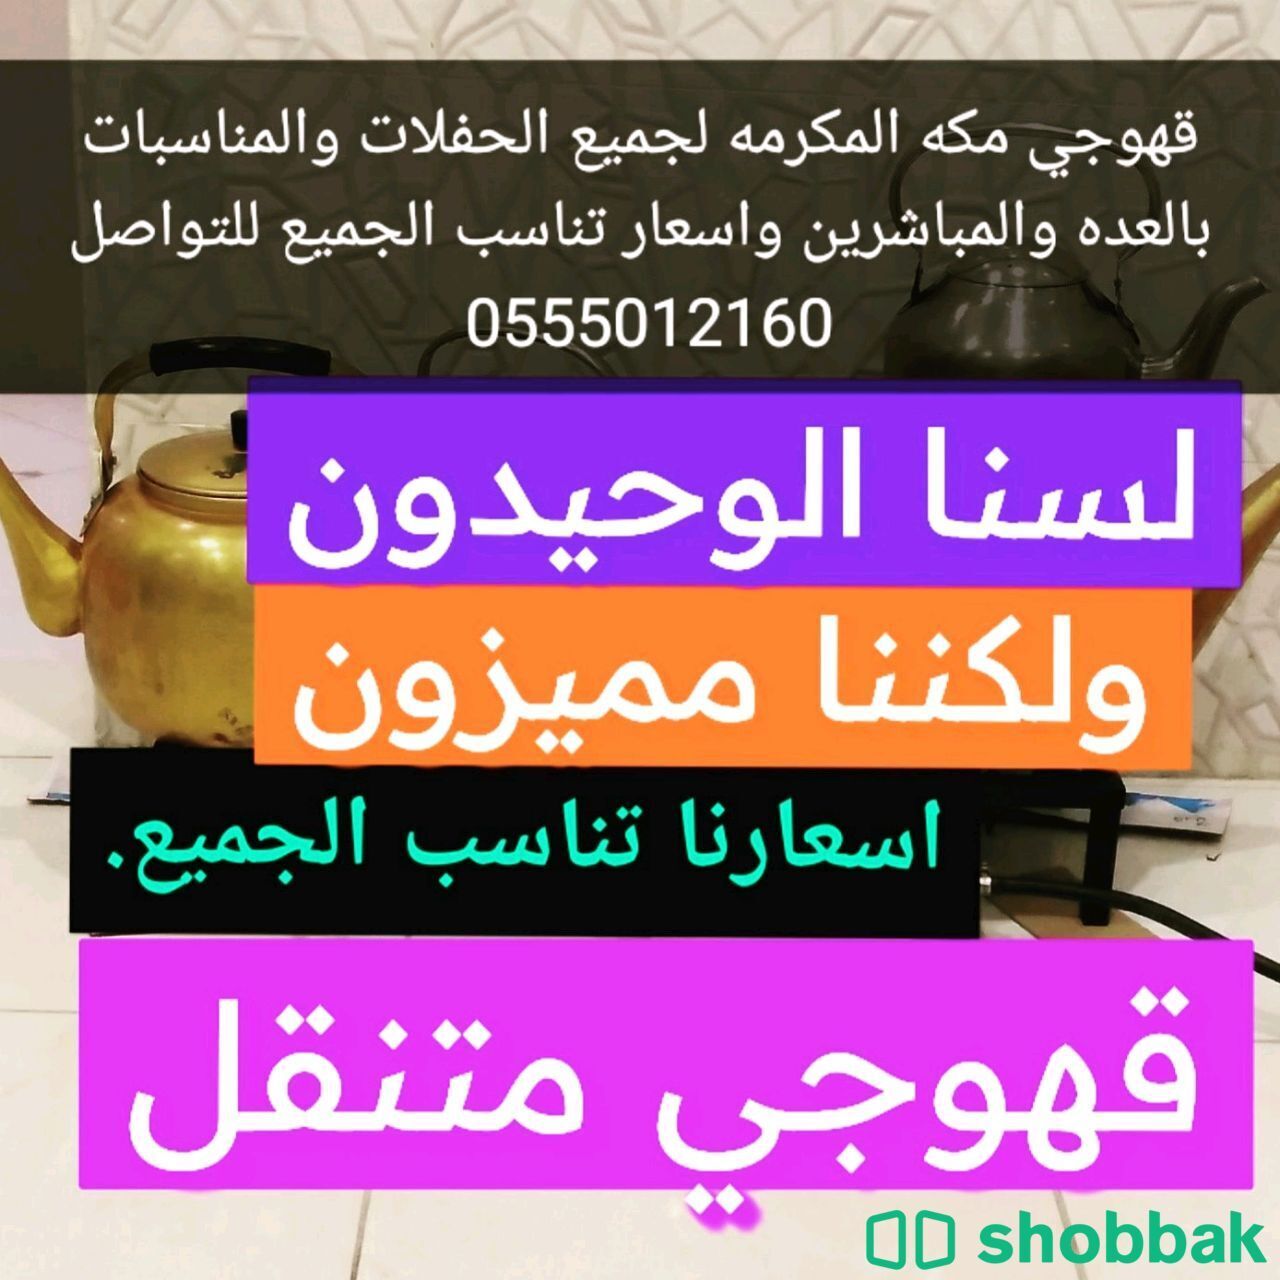 قهوجي 0555012160  Shobbak Saudi Arabia